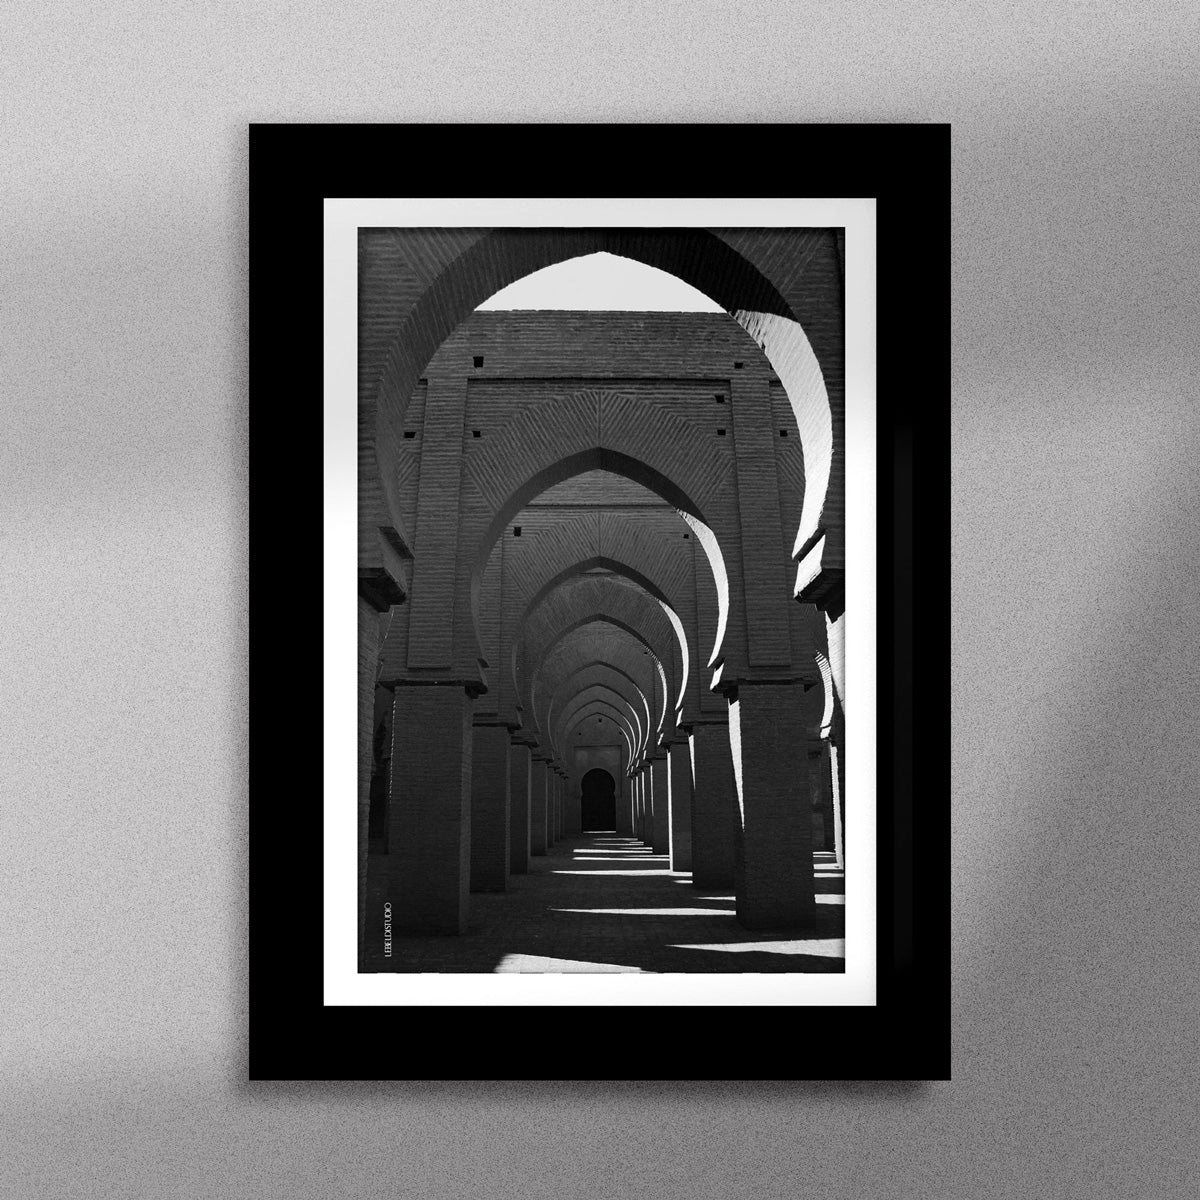 Tableau décoratif en noir et blanc de la Mosquée Tinmel, encadré dans un cadre noir - Format A5.